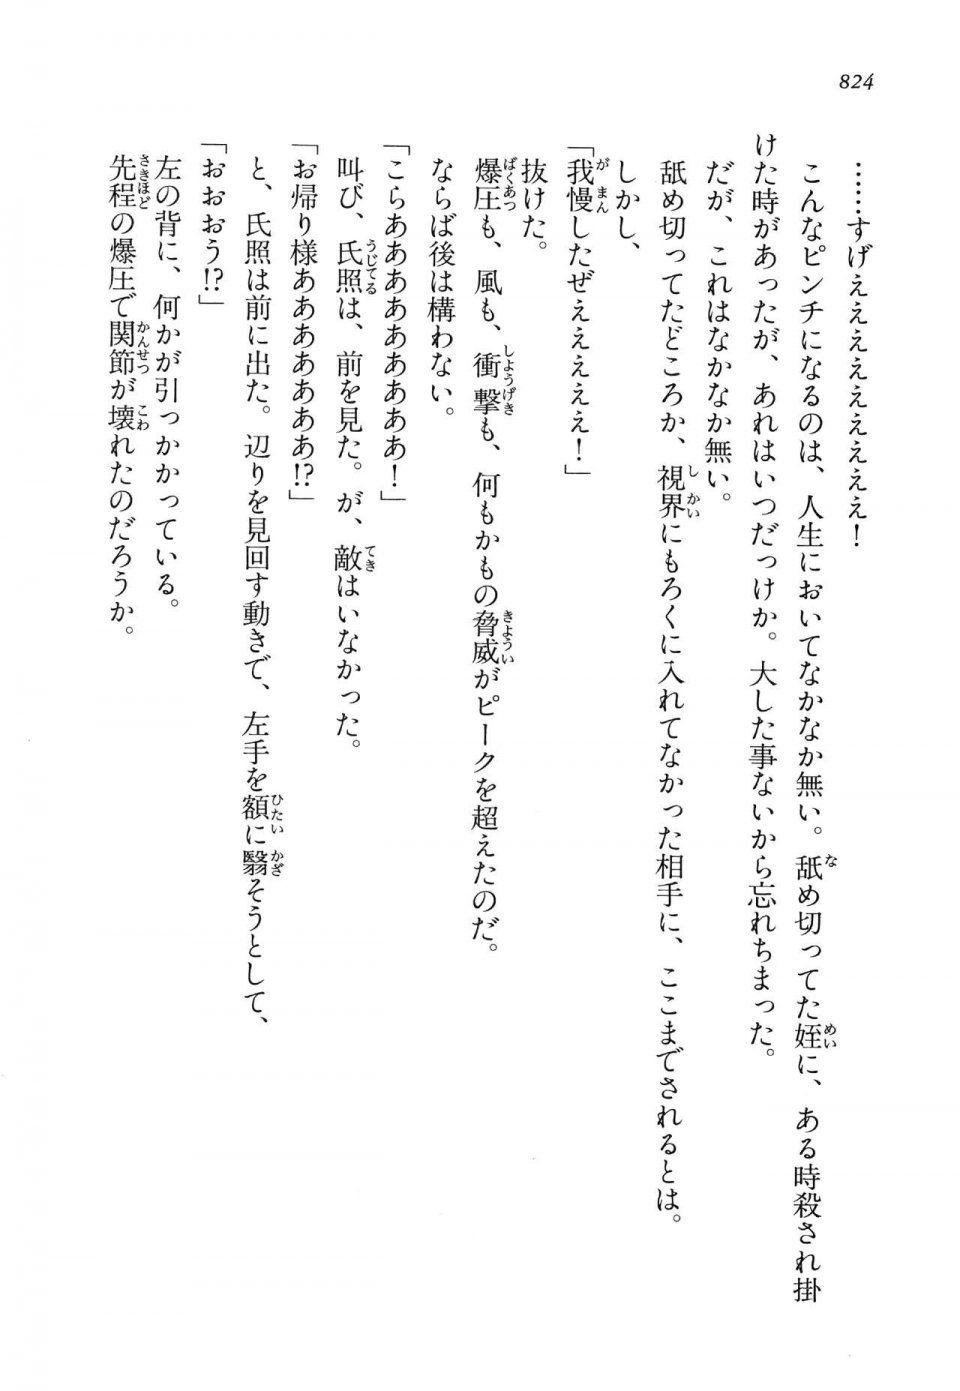 Kyoukai Senjou no Horizon LN Vol 14(6B) - Photo #824